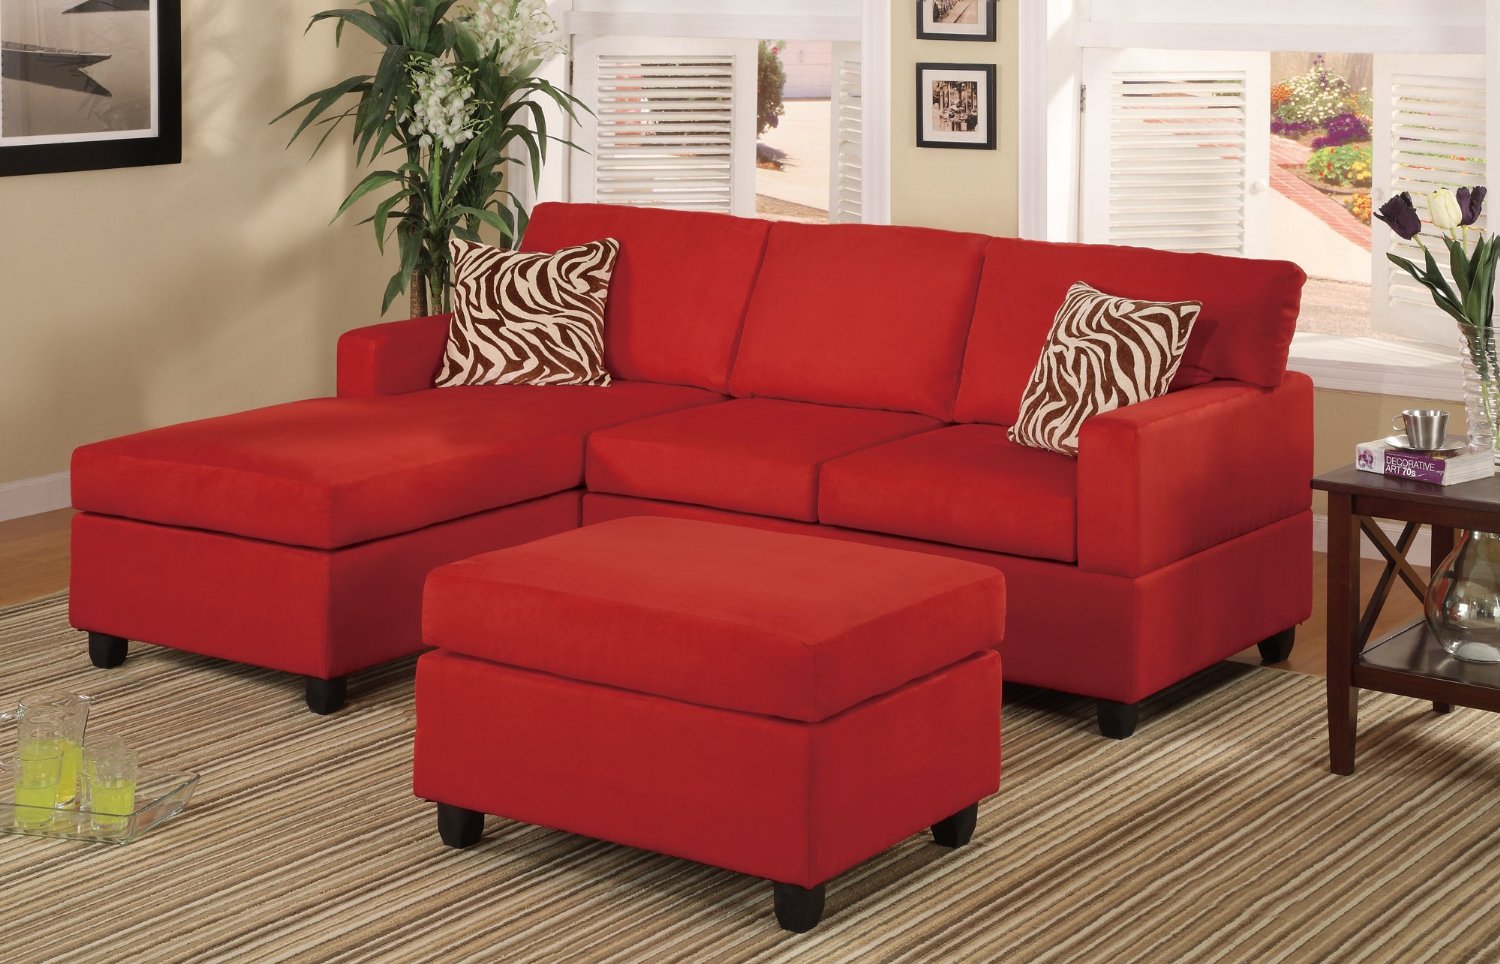 Desain Ruang Tamu Sofa Merah Bikin Tamu Semakin Nyaman Disain